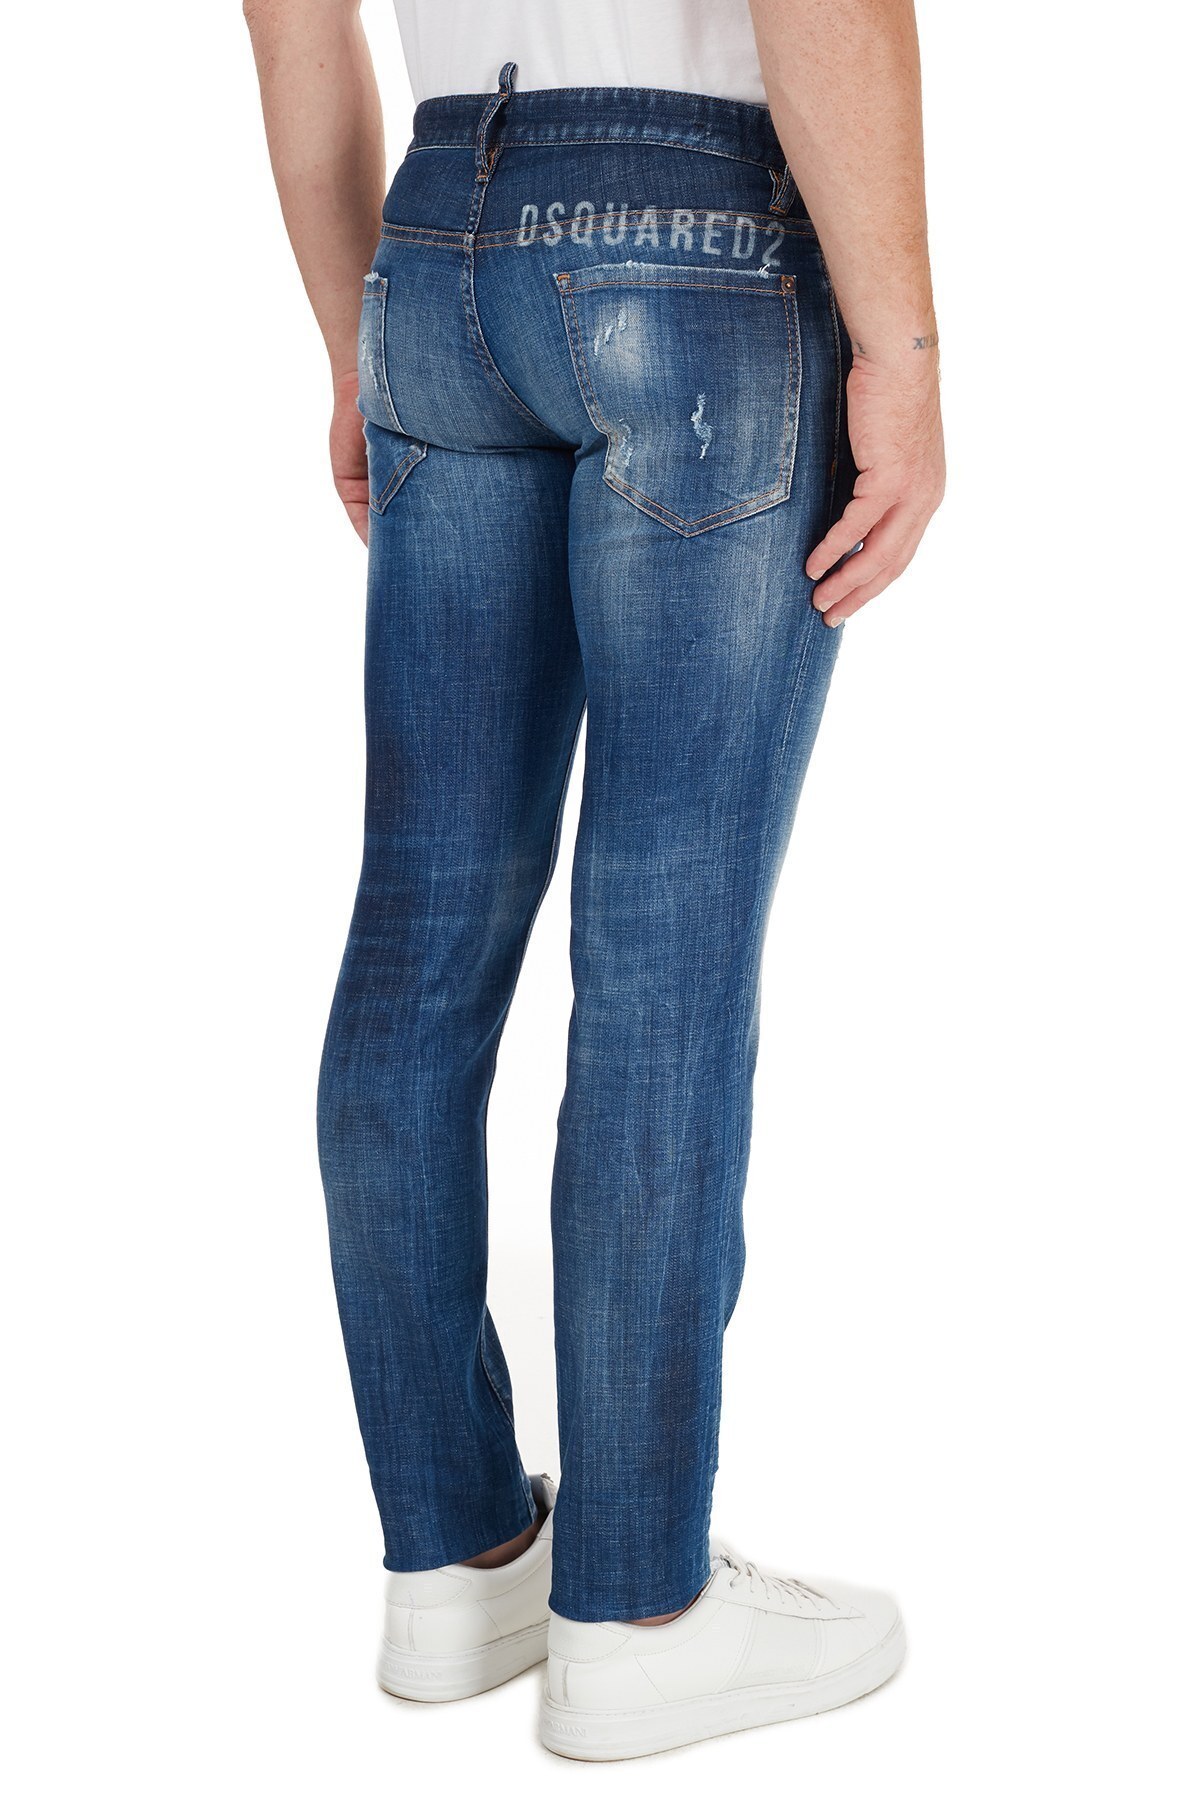 Dsquared2 Slim Fit Pamuklu Jeans Erkek Kot Pantolon S74LB0758 S30342 470 MAVİ